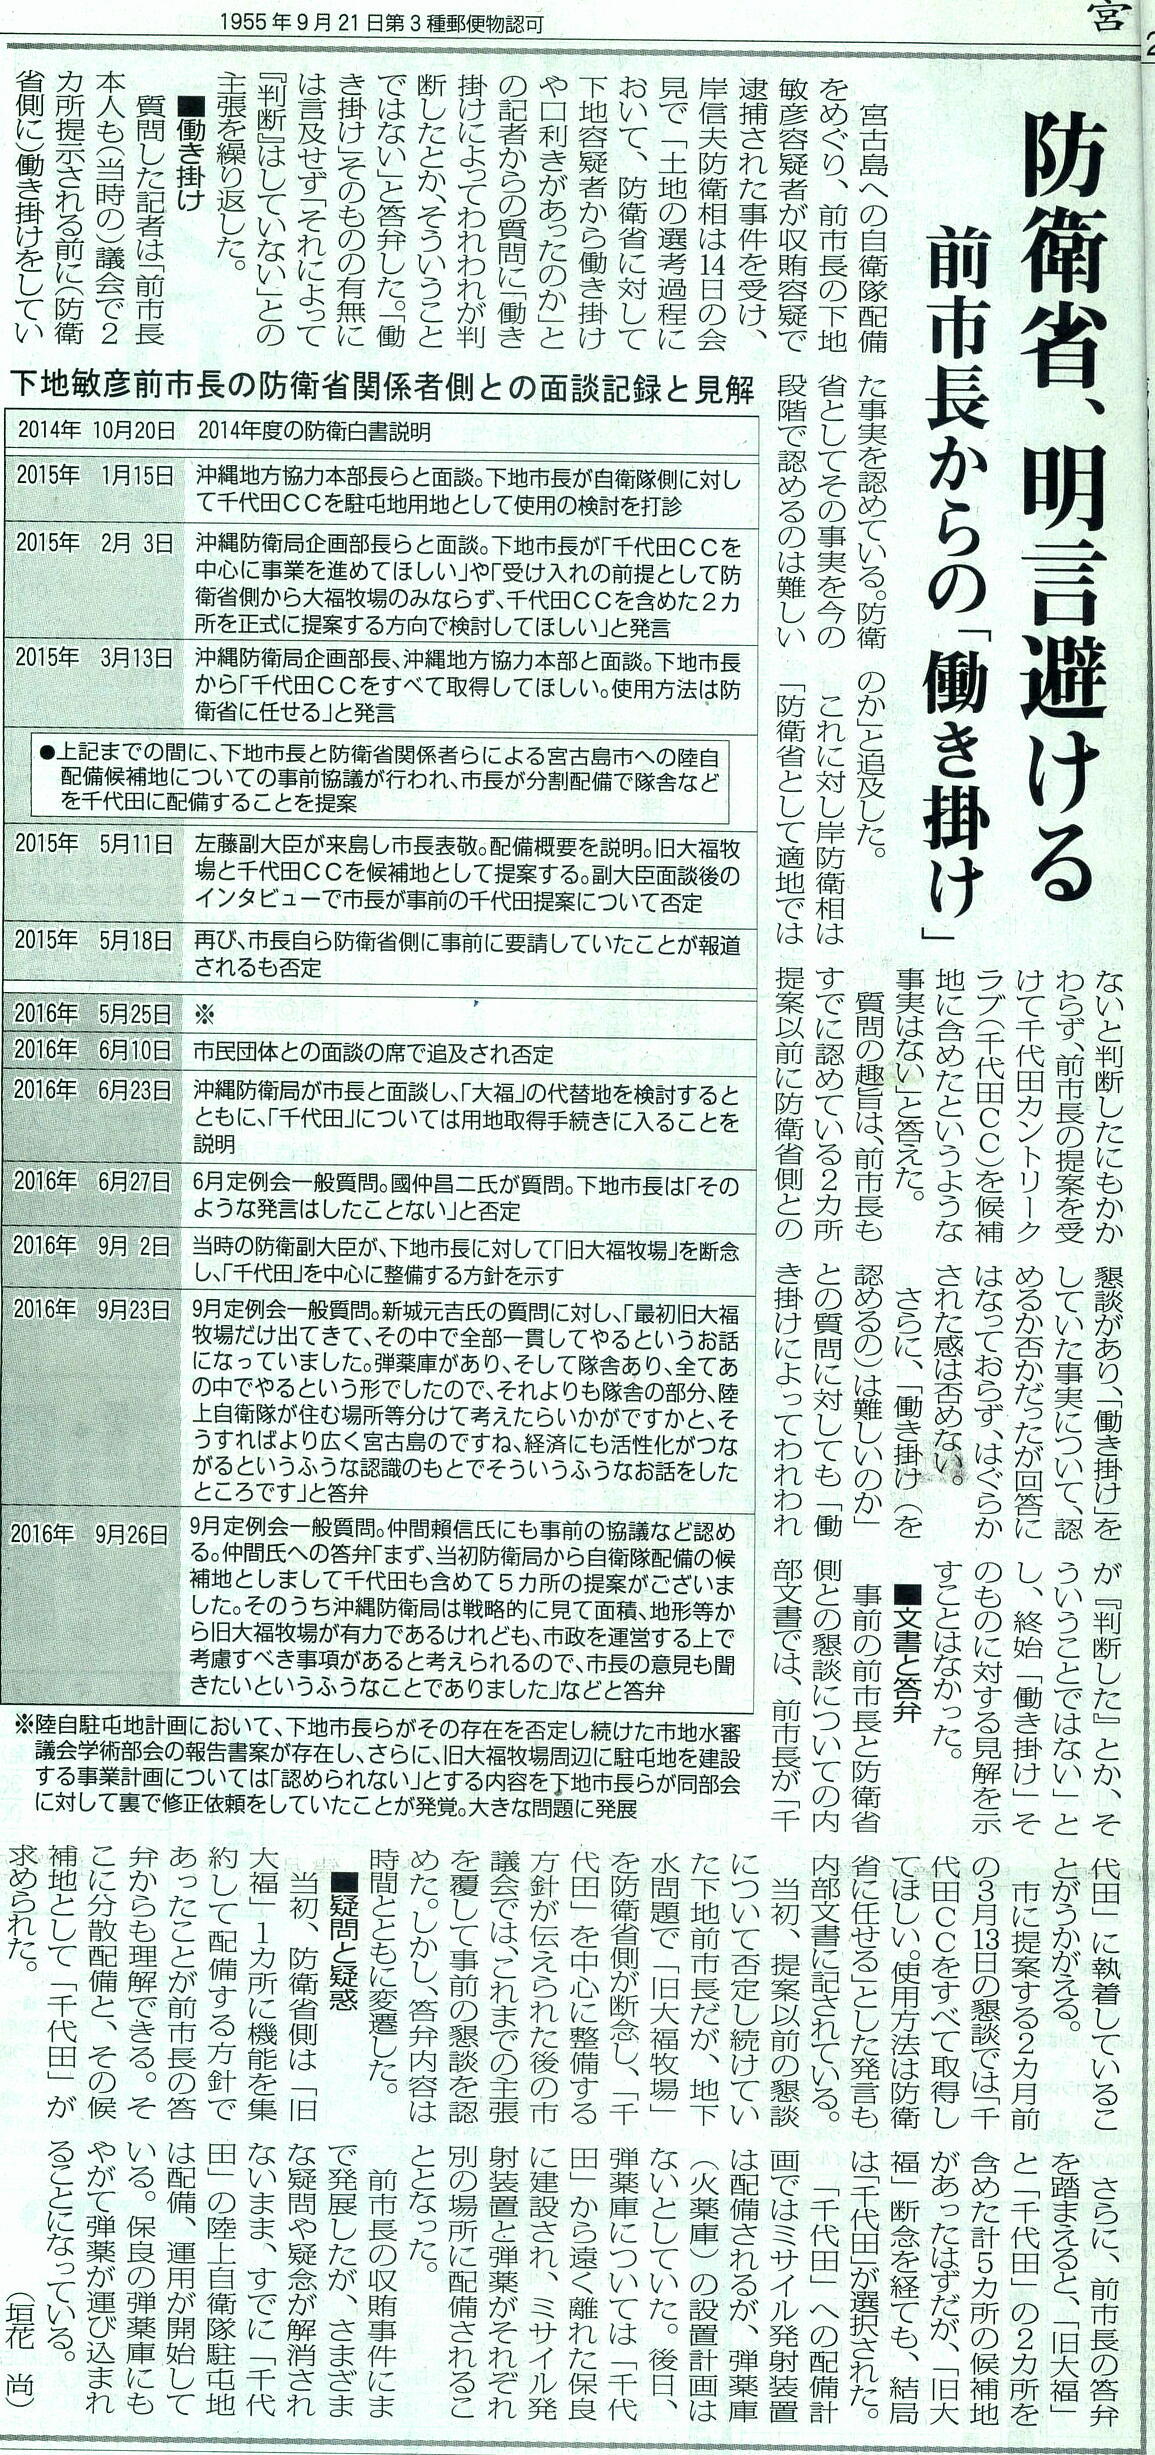 miyakomainichi2021 05183